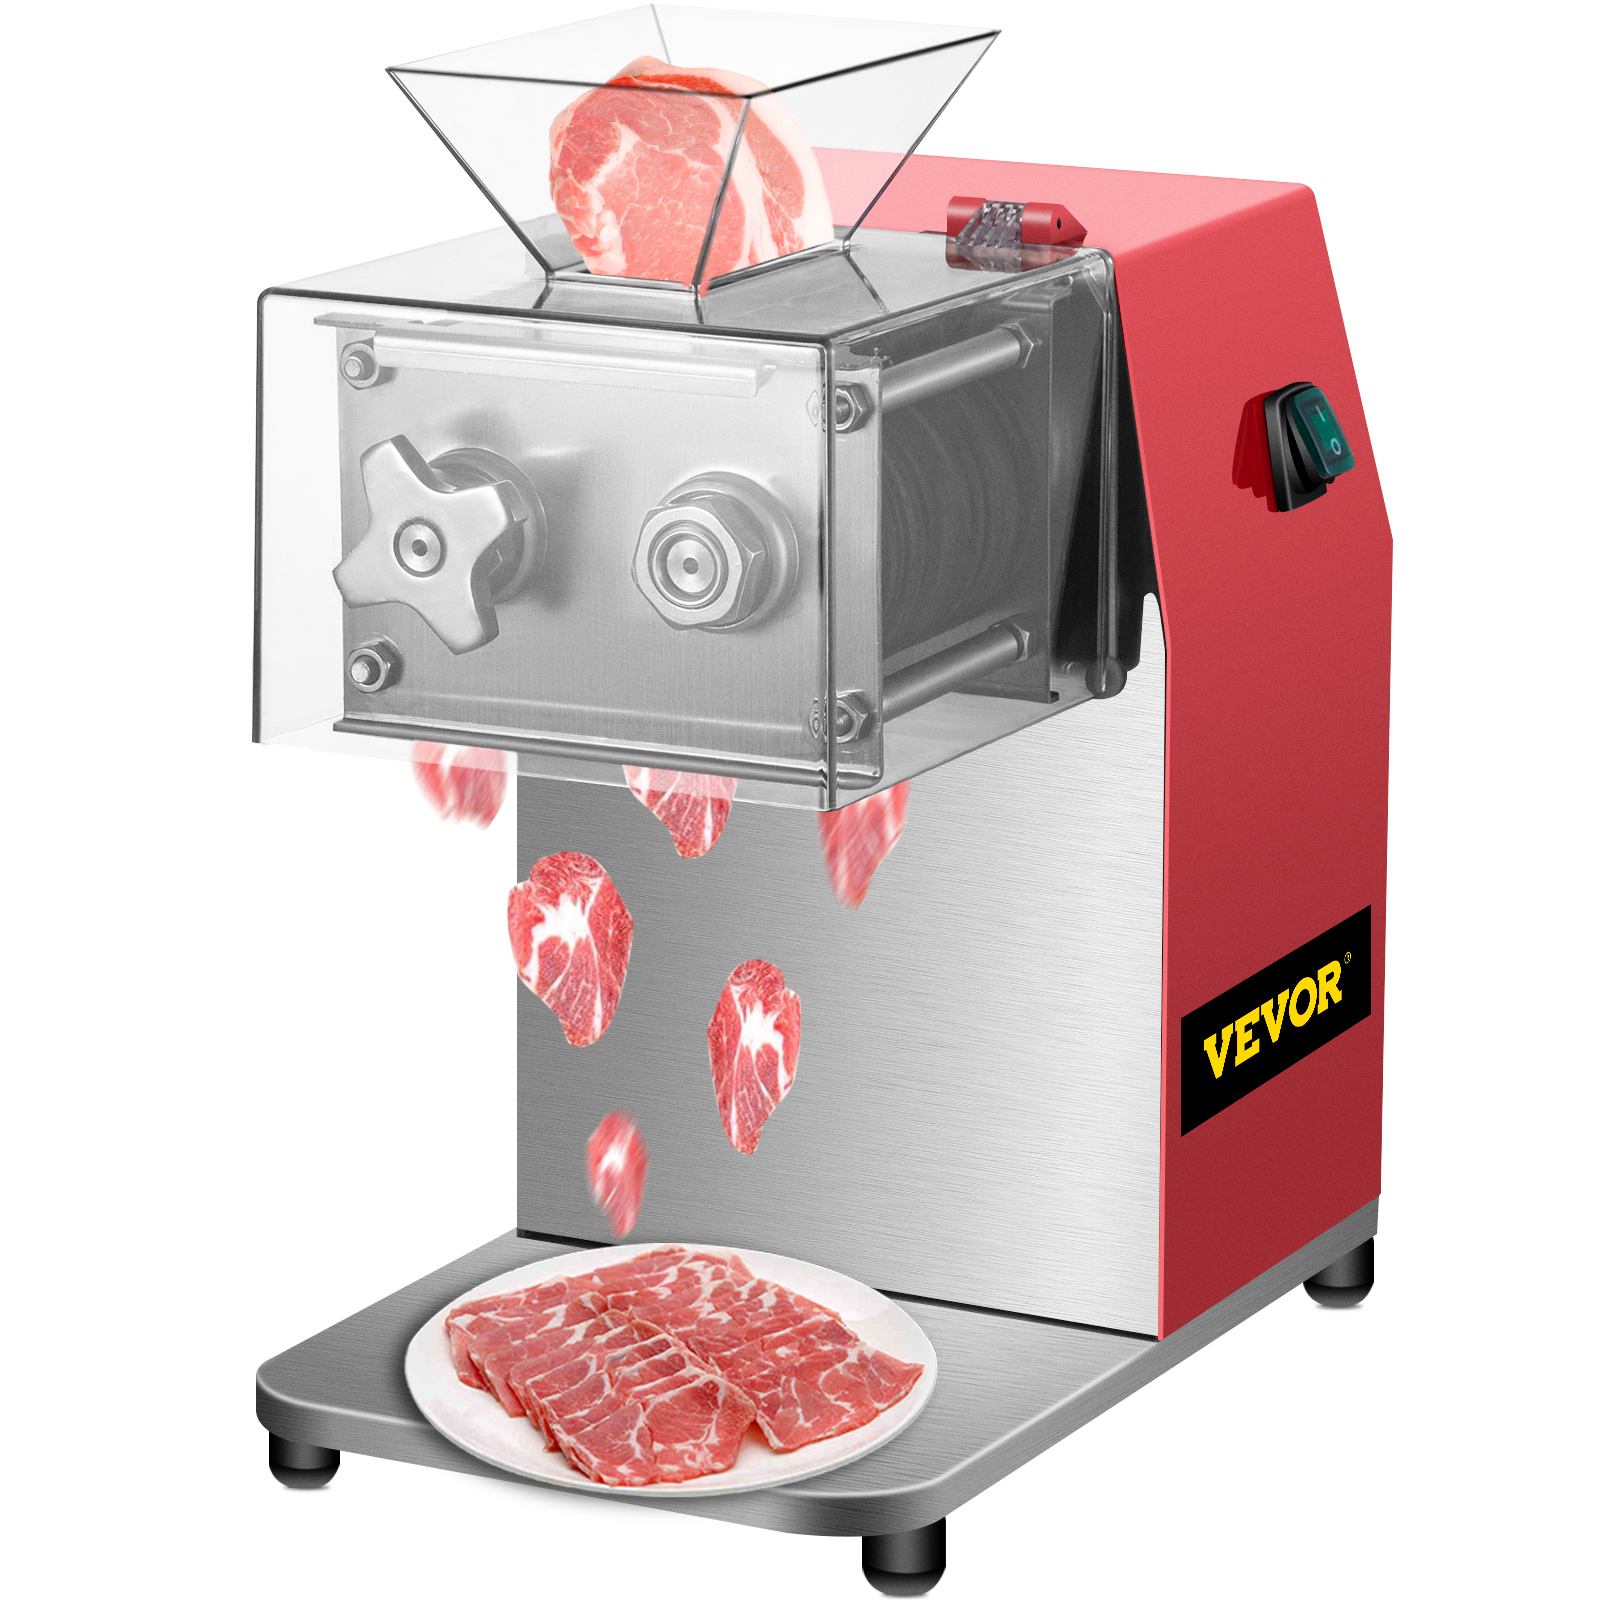 Vevor 250kg/h Meat Cutting Machine 850w 5mm Blade Commercial Meat Cutter Slicer от Vevor Many GEOs